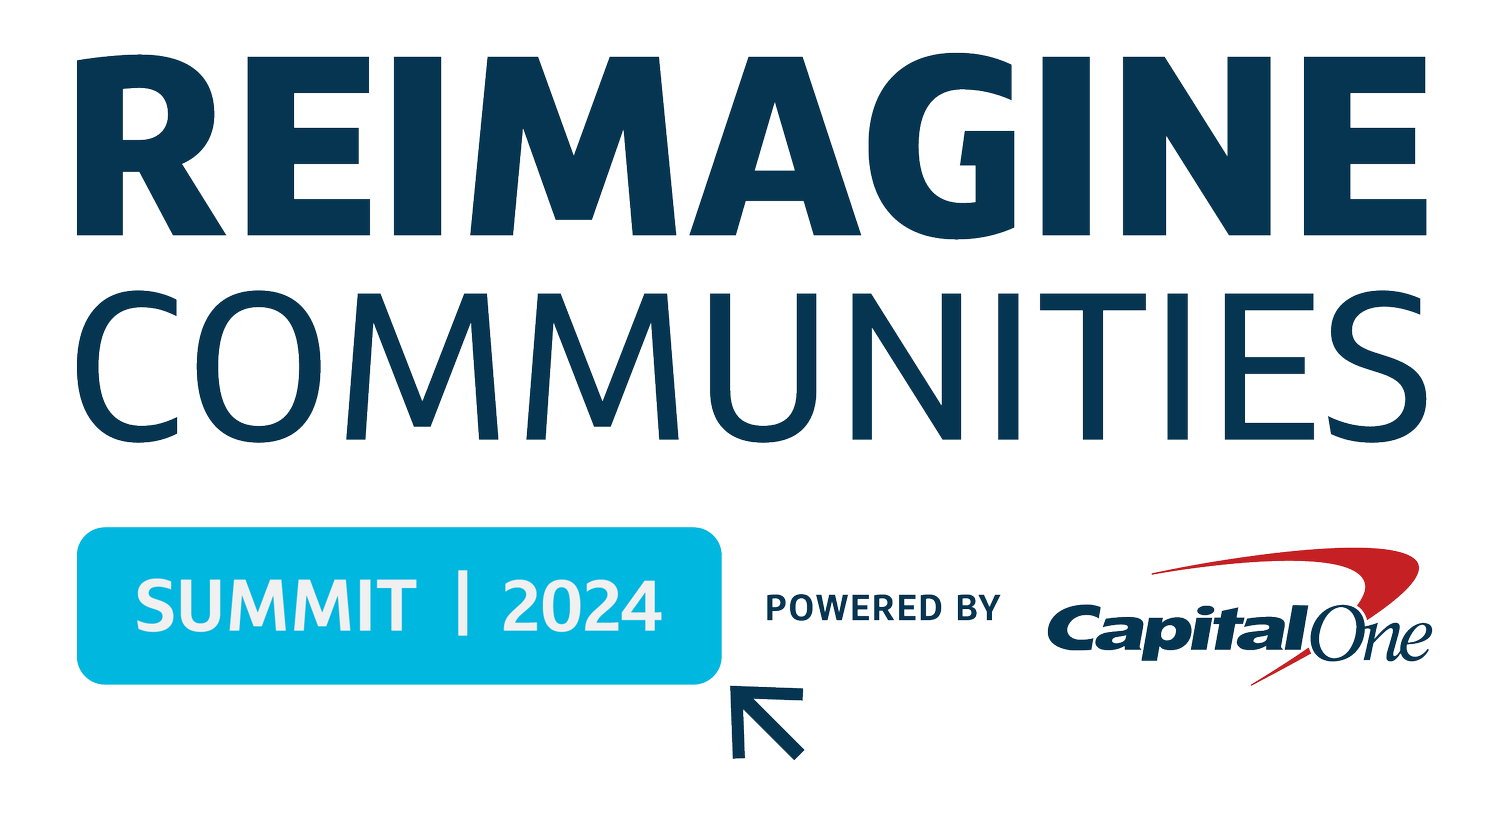 Reimagine Communities Summit